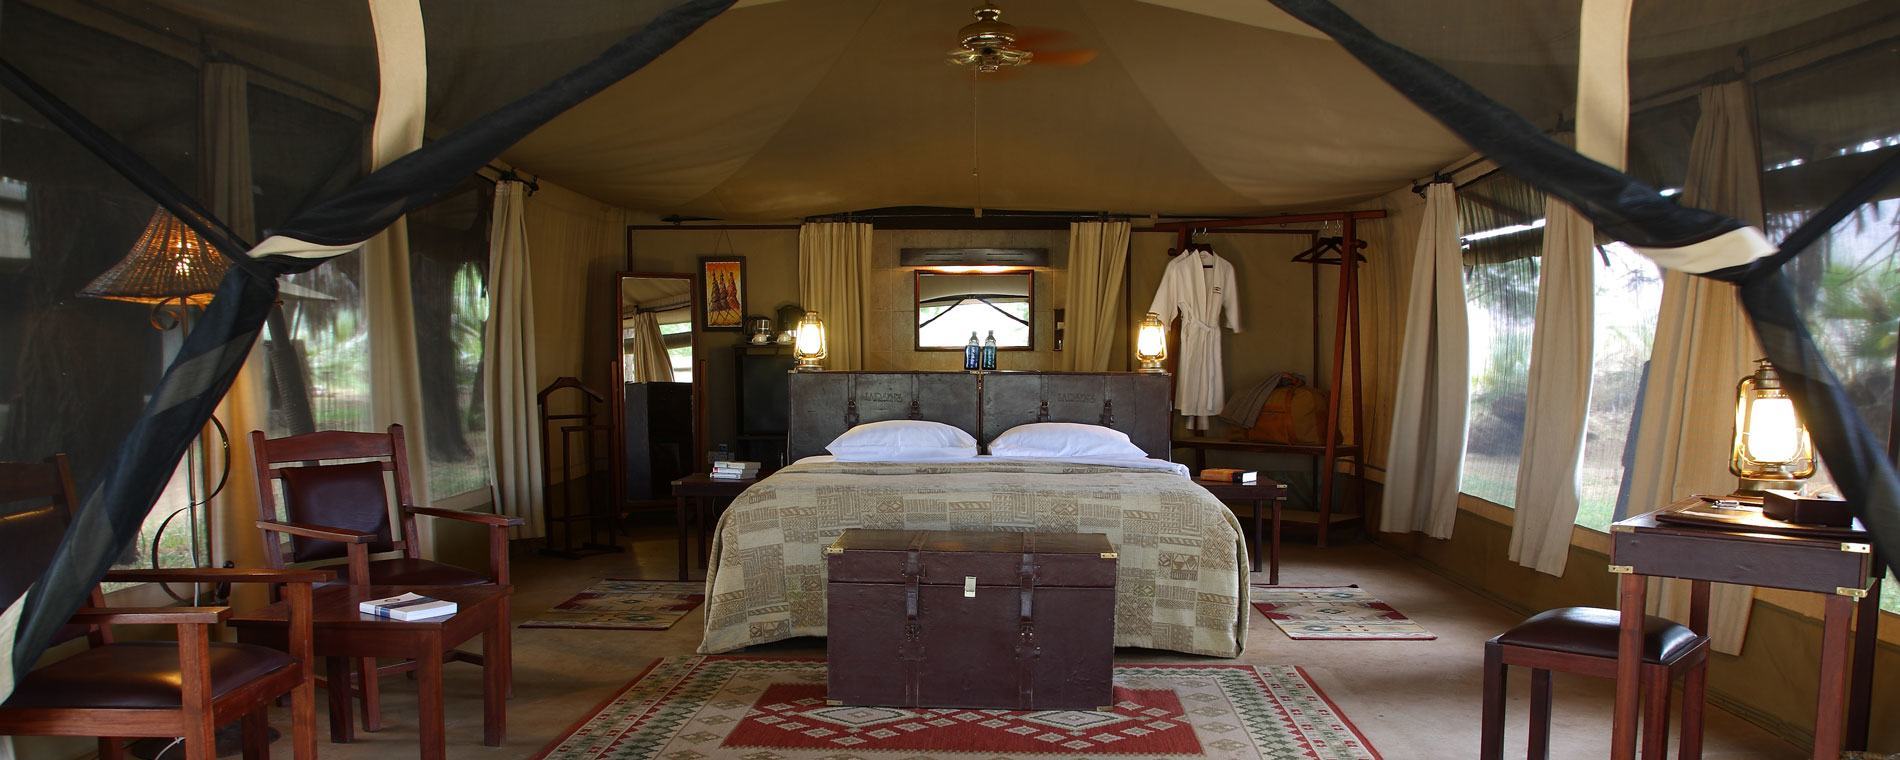 larsens-tented-camp-bedroom-1900.jpg